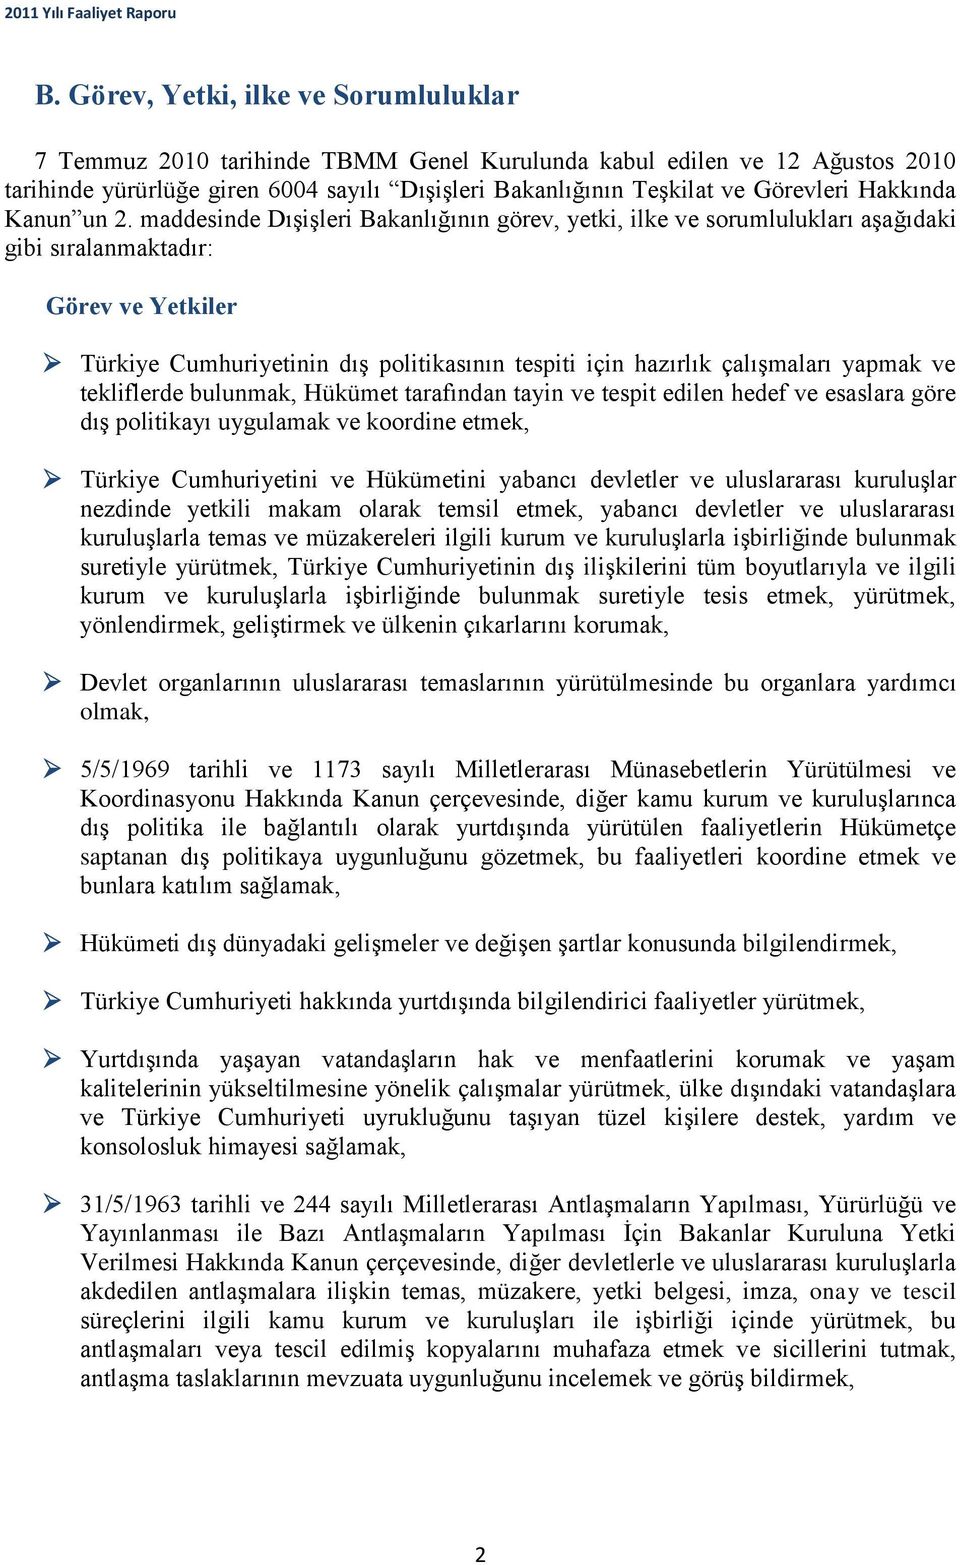 maddesinde Dışişleri Bakanlığının görev, yetki, ilke ve sorumlulukları aşağıdaki gibi sıralanmaktadır: Görev ve Yetkiler Türkiye Cumhuriyetinin dış politikasının tespiti için hazırlık çalışmaları